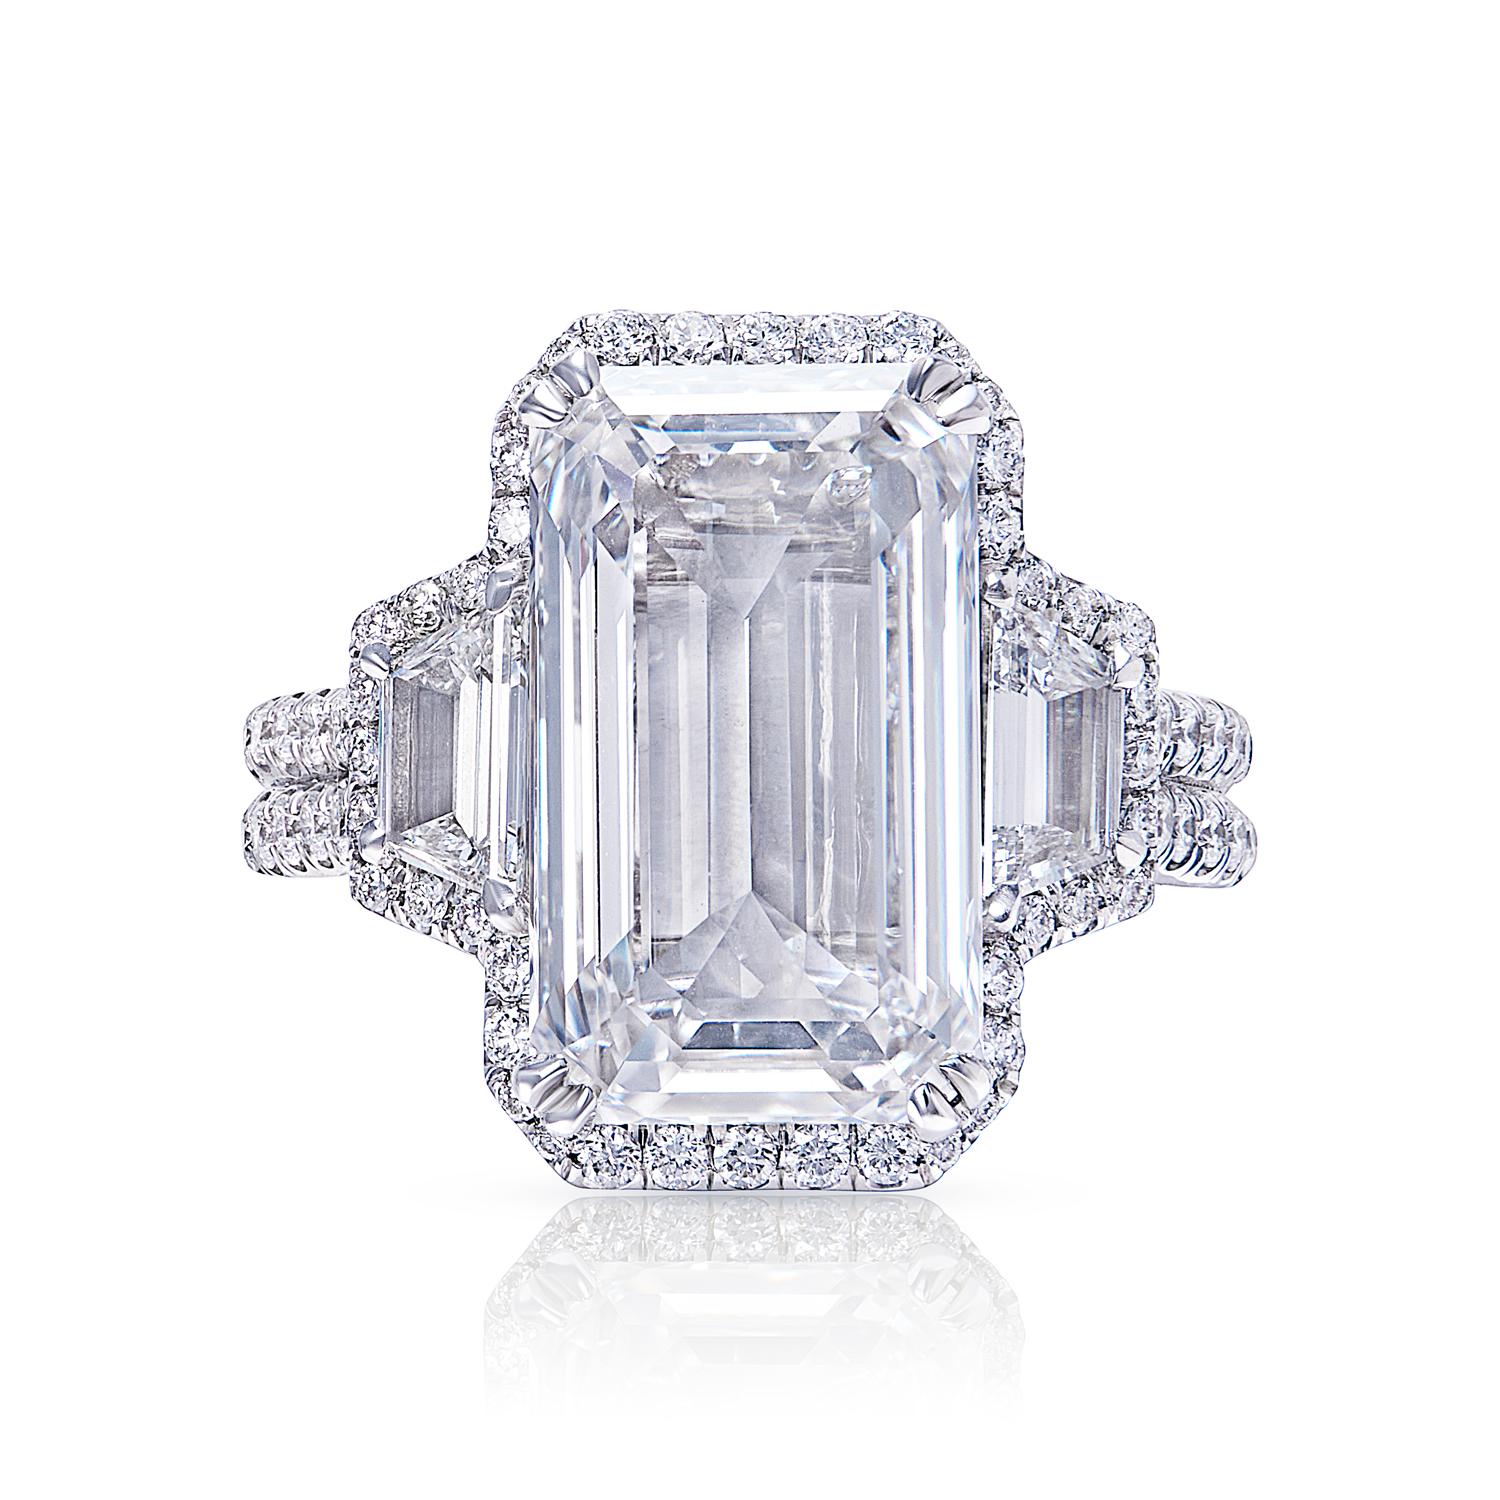 Une bague en diamant de taille émeraude est un choix classique et sophistiqué qui ne se démodera jamais. La forme rectangulaire du diamant taille émeraude est unique et attire l'attention, et les doigts minces et effilés de la monture mettent le